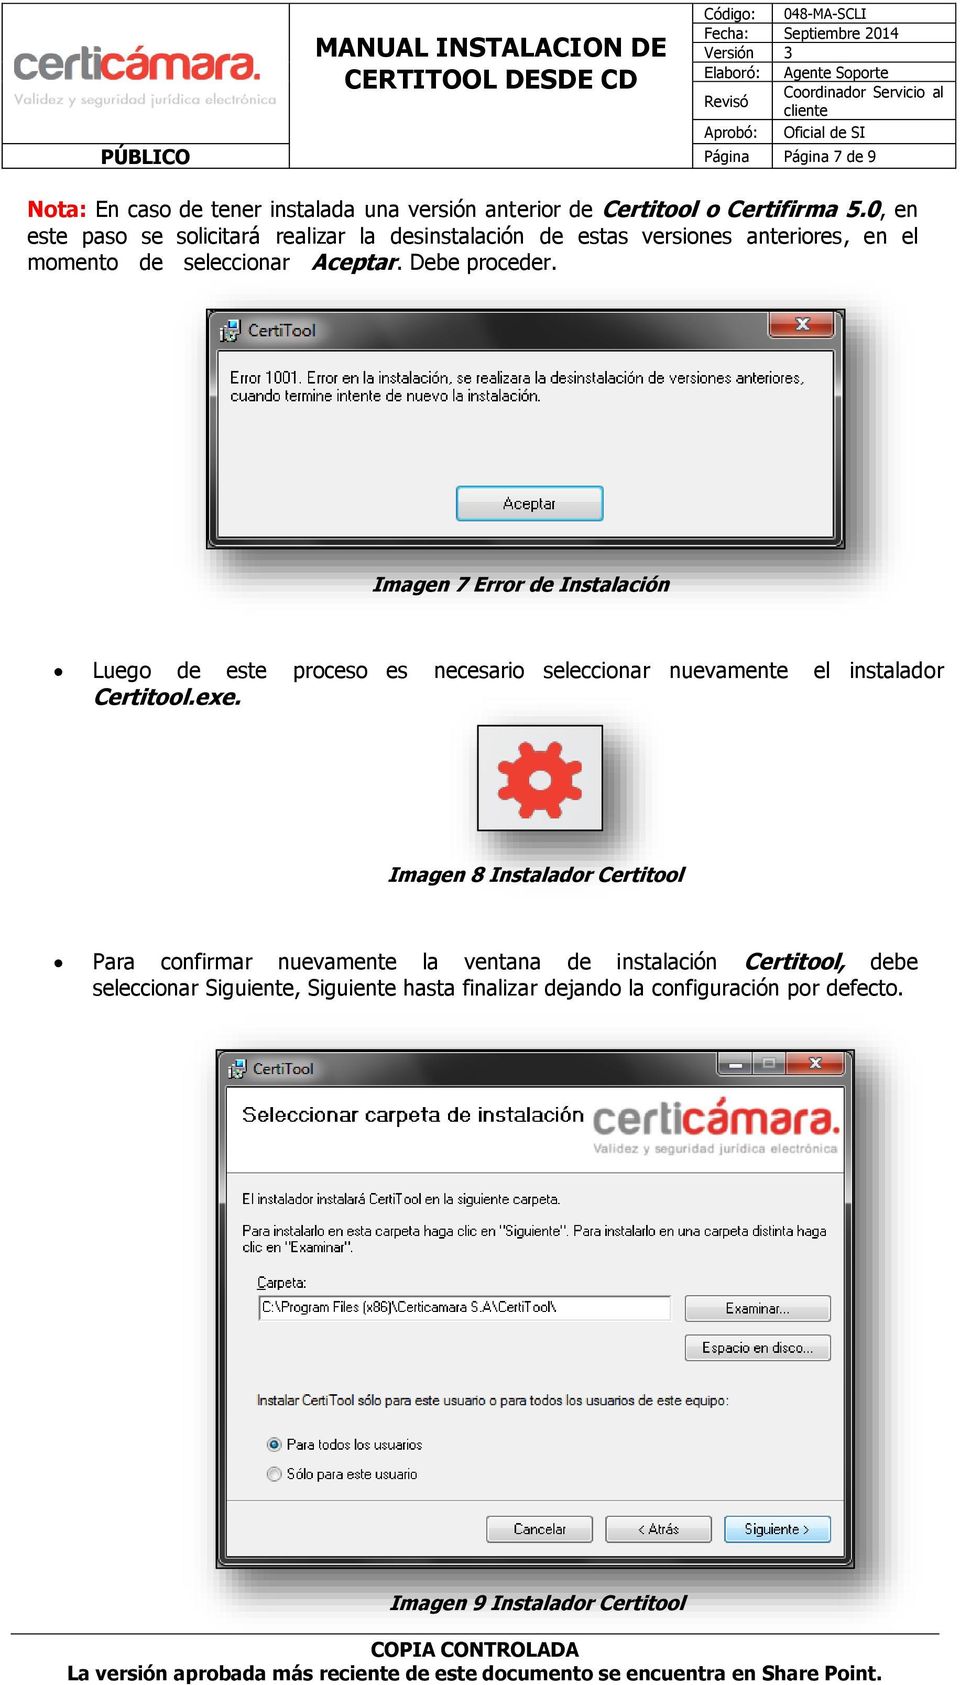 Imagen 7 Error de Instalación Luego de este proceso es necesario seleccionar nuevamente el instalador Certitool.exe.